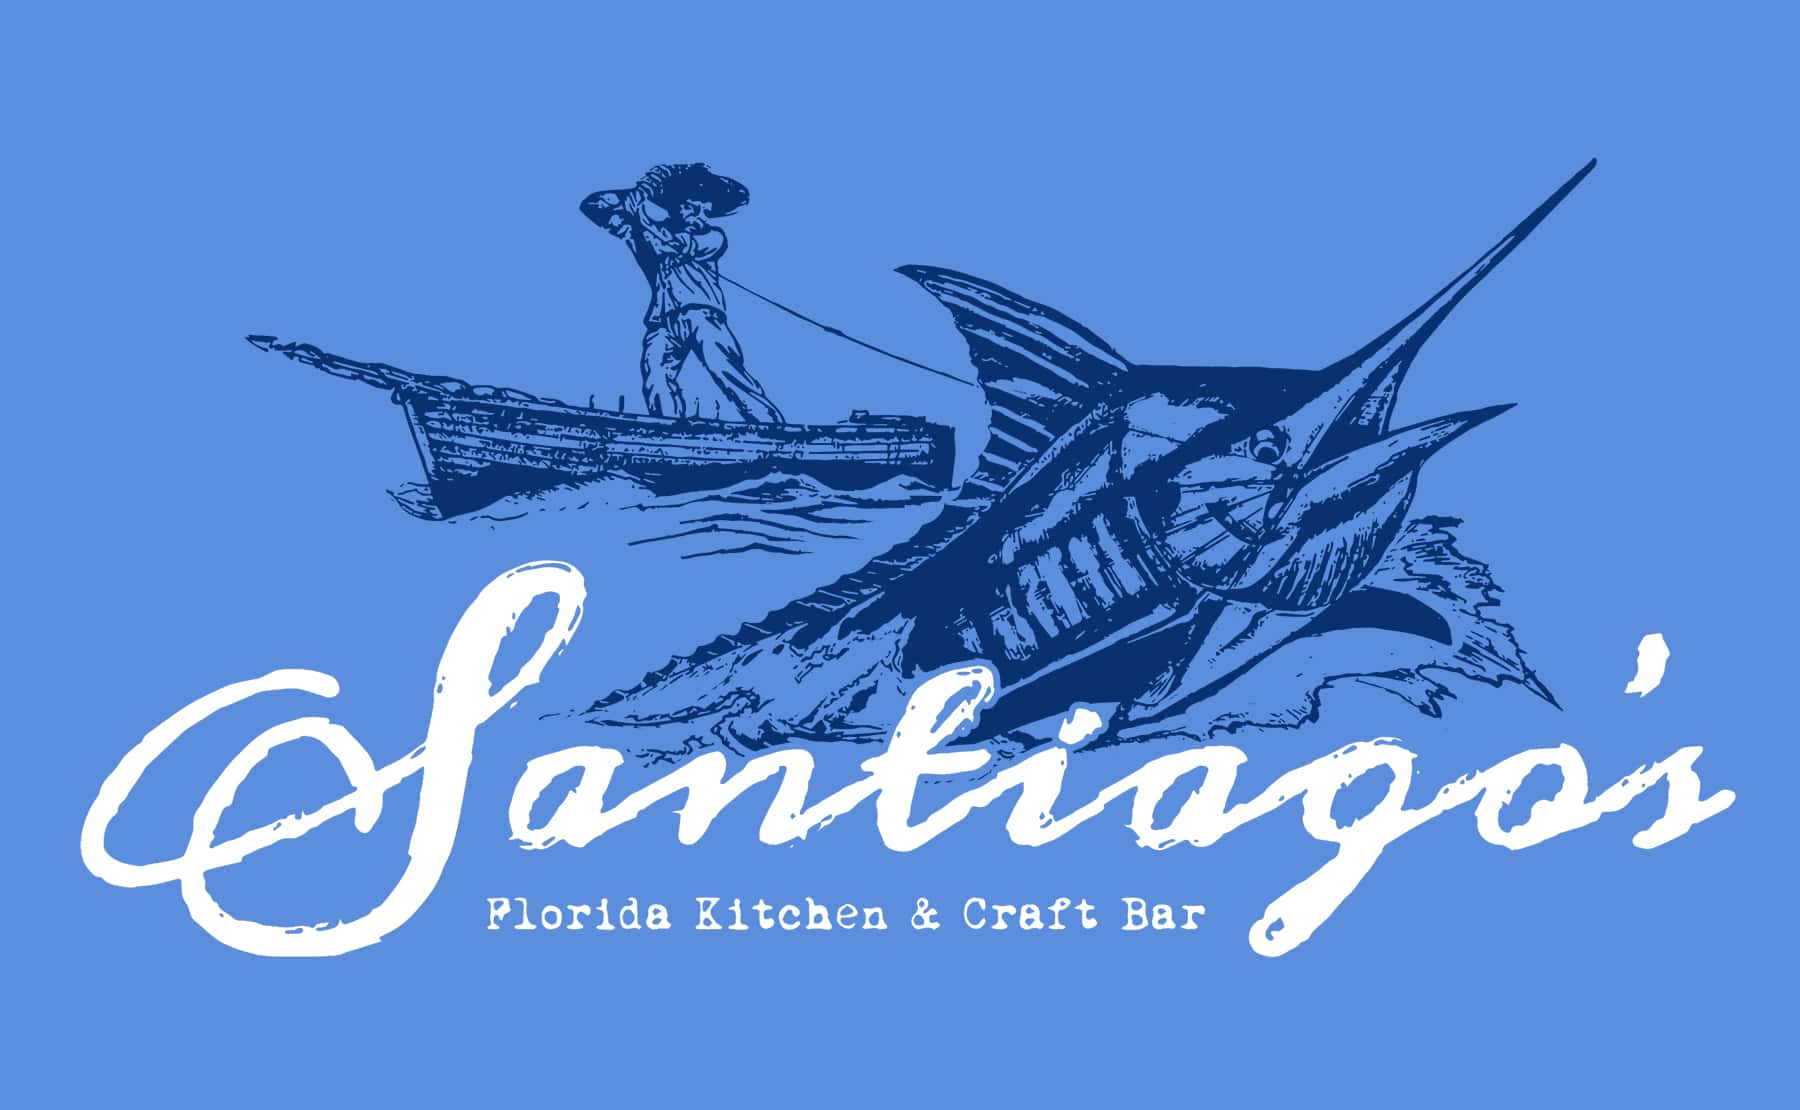 EASTER BRUNCH AT SANTIAGO'S FLORIDA KITCHEN & CRAFT BAR